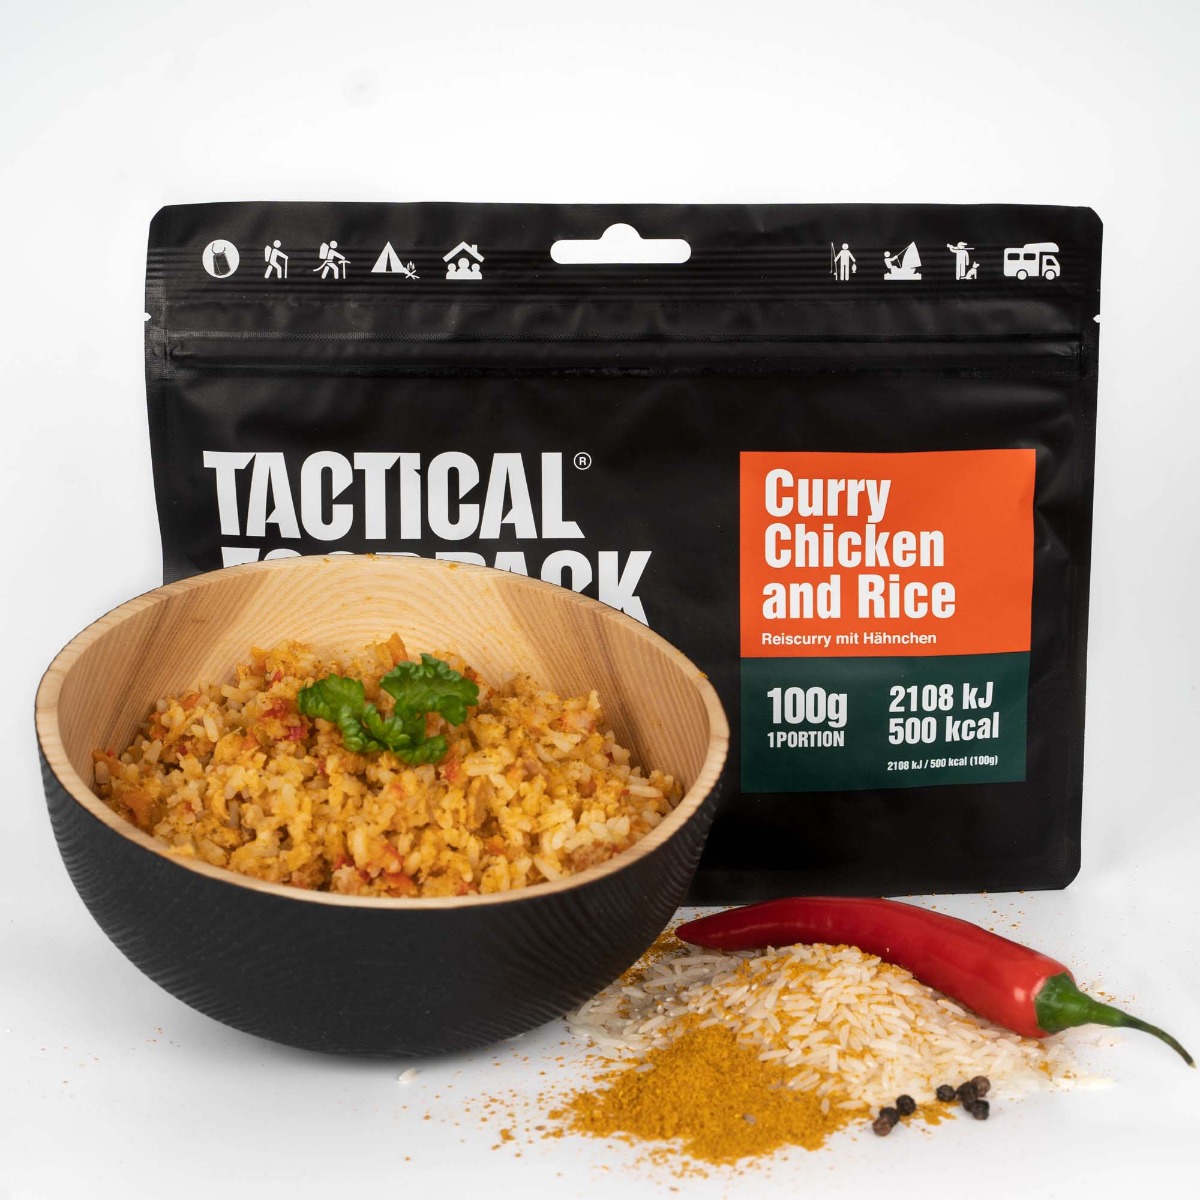 Uživajte v okusnem piščančjem kariju z rižem Tactical Foodpack - liofilizirani hrani, primerni za pohodništvo, kampiranje in preživetje v naravi. Hiter obrok z visoko hranilno vrednostjo, dolgo svežino ter enostavno pripravo. Pridobite energijo in okusite vrhunsko vojaško hrano!